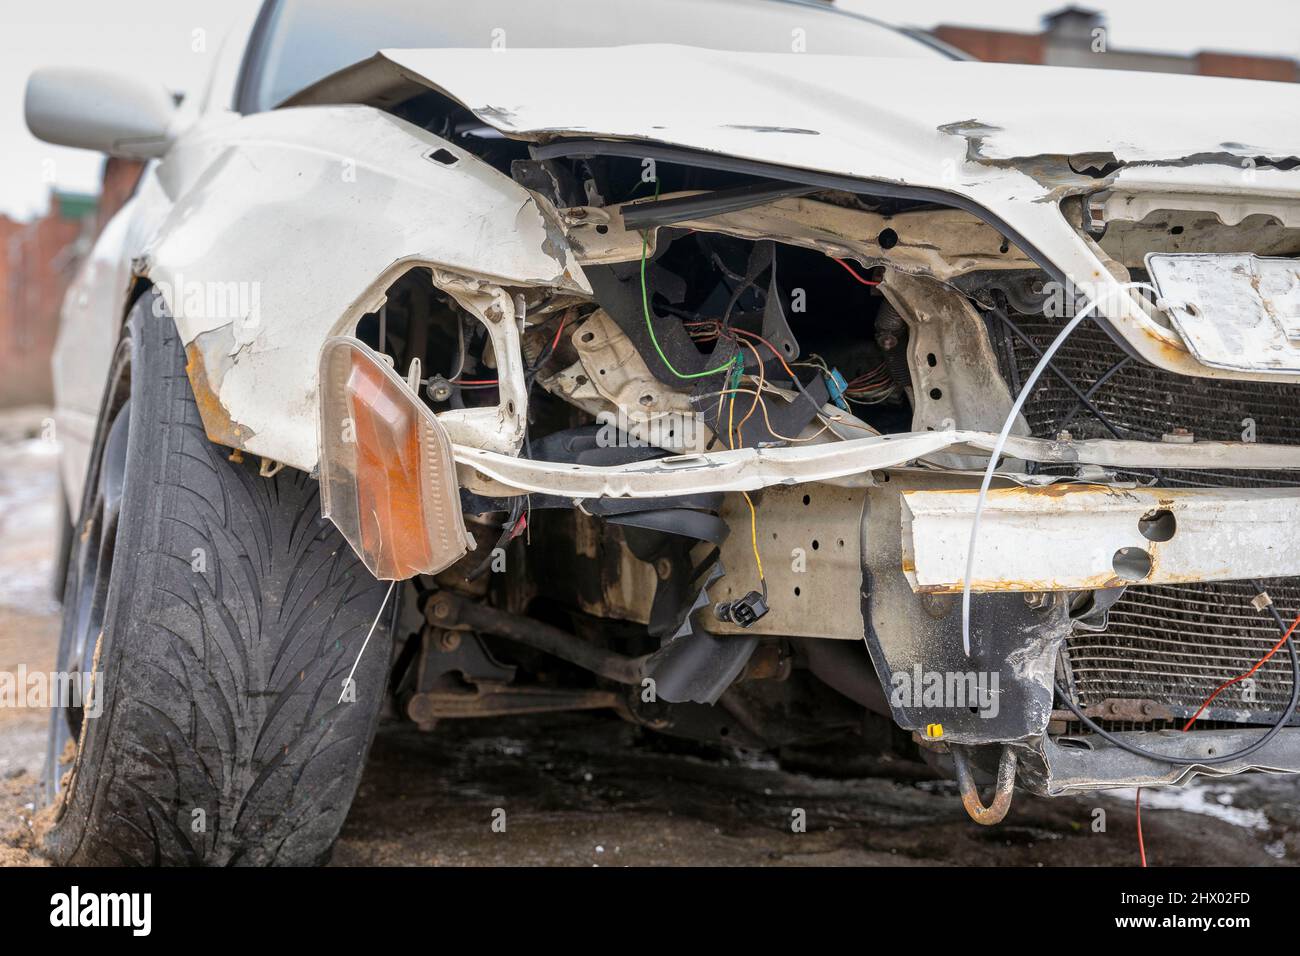 Kaputtes Auto mit beschädigten Scheinwerfern, Motorhaube und Stoßstange,  jdm japanisches Auto nach dem Unfall Stockfotografie - Alamy